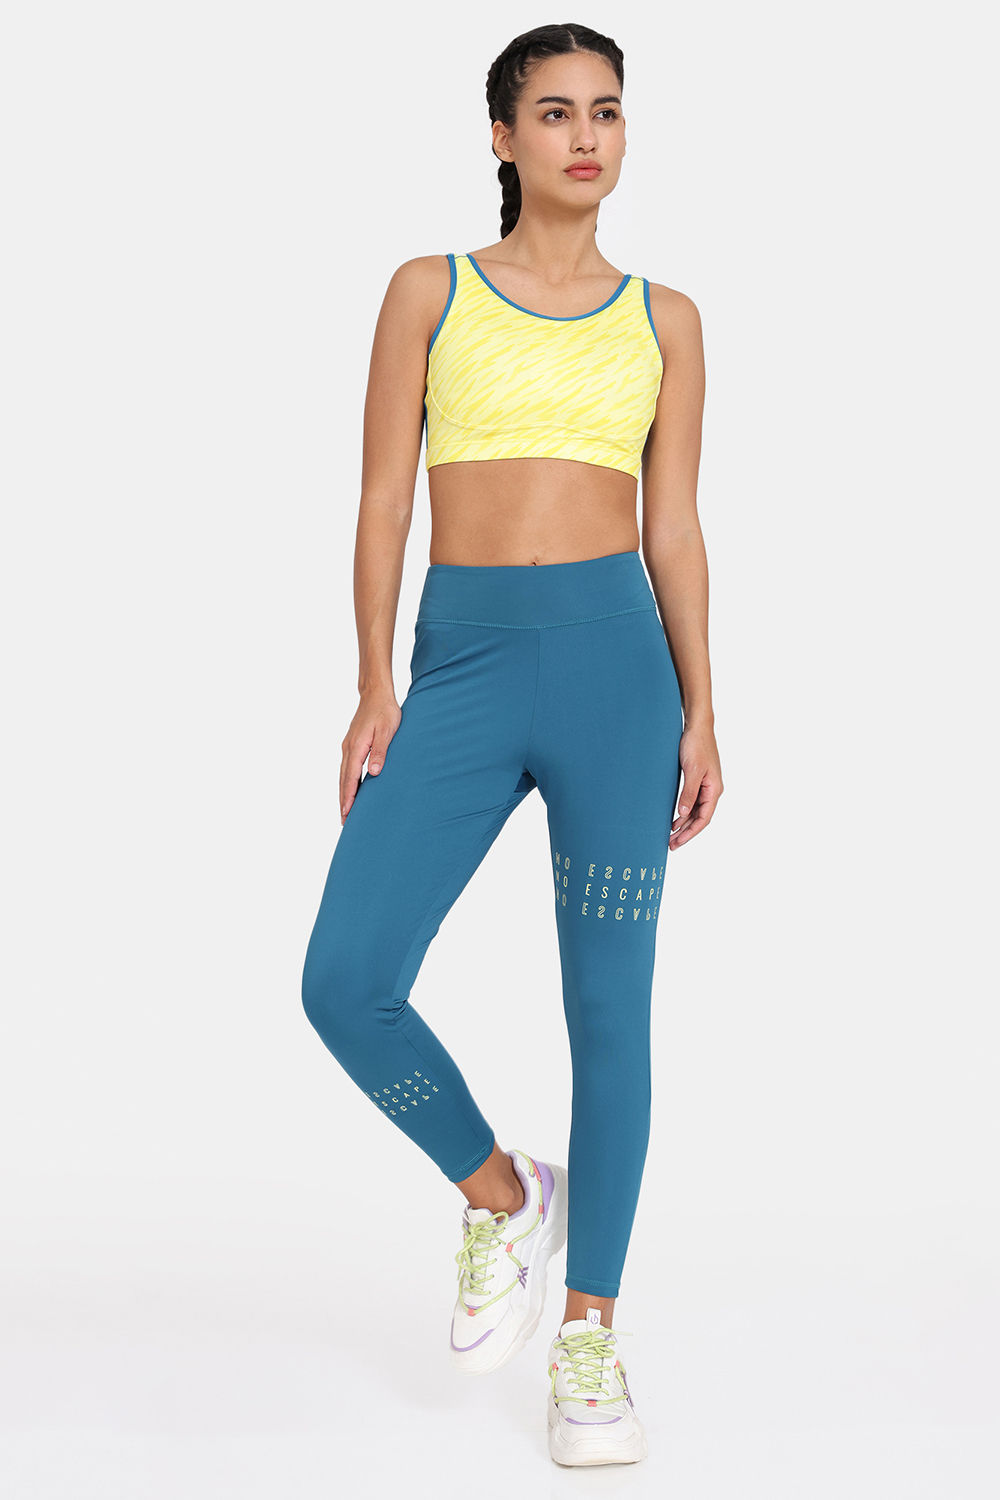 Striped Symmetry Blue For Girls Yoga Leggings - Buy Print Leggings Online |  FlexyFeli